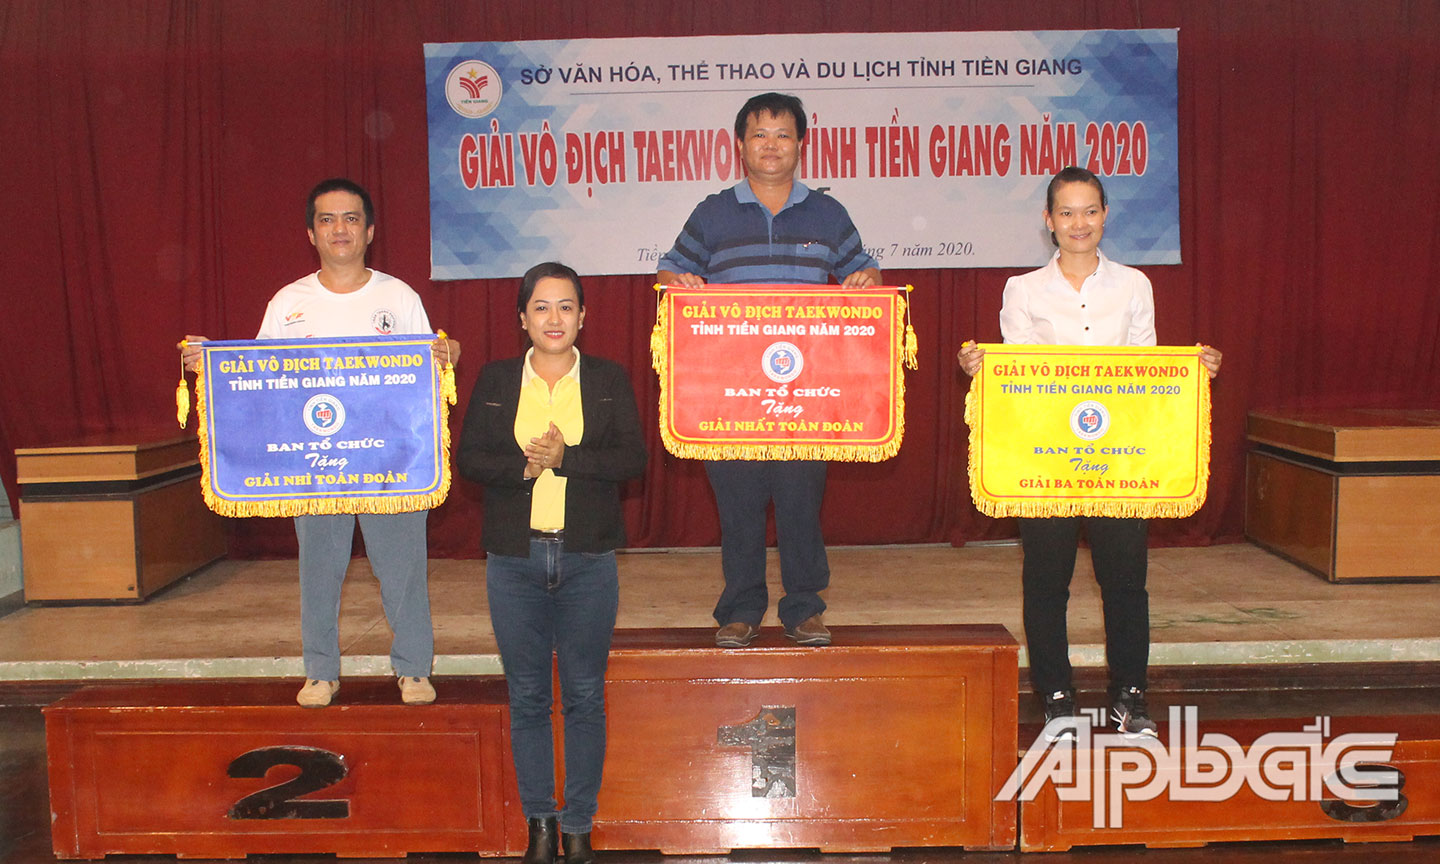 Phó Giám đốc Sở Văn hóa, Thể thao và Du lịch Nguyễn Thị Kim Chi trao  Cờ toàn đoàn cho 3 đơn vị có thành tích tốt nhất ở Giải Vô địch Taekwondo  tỉnh Tiền Giang năm 2020.